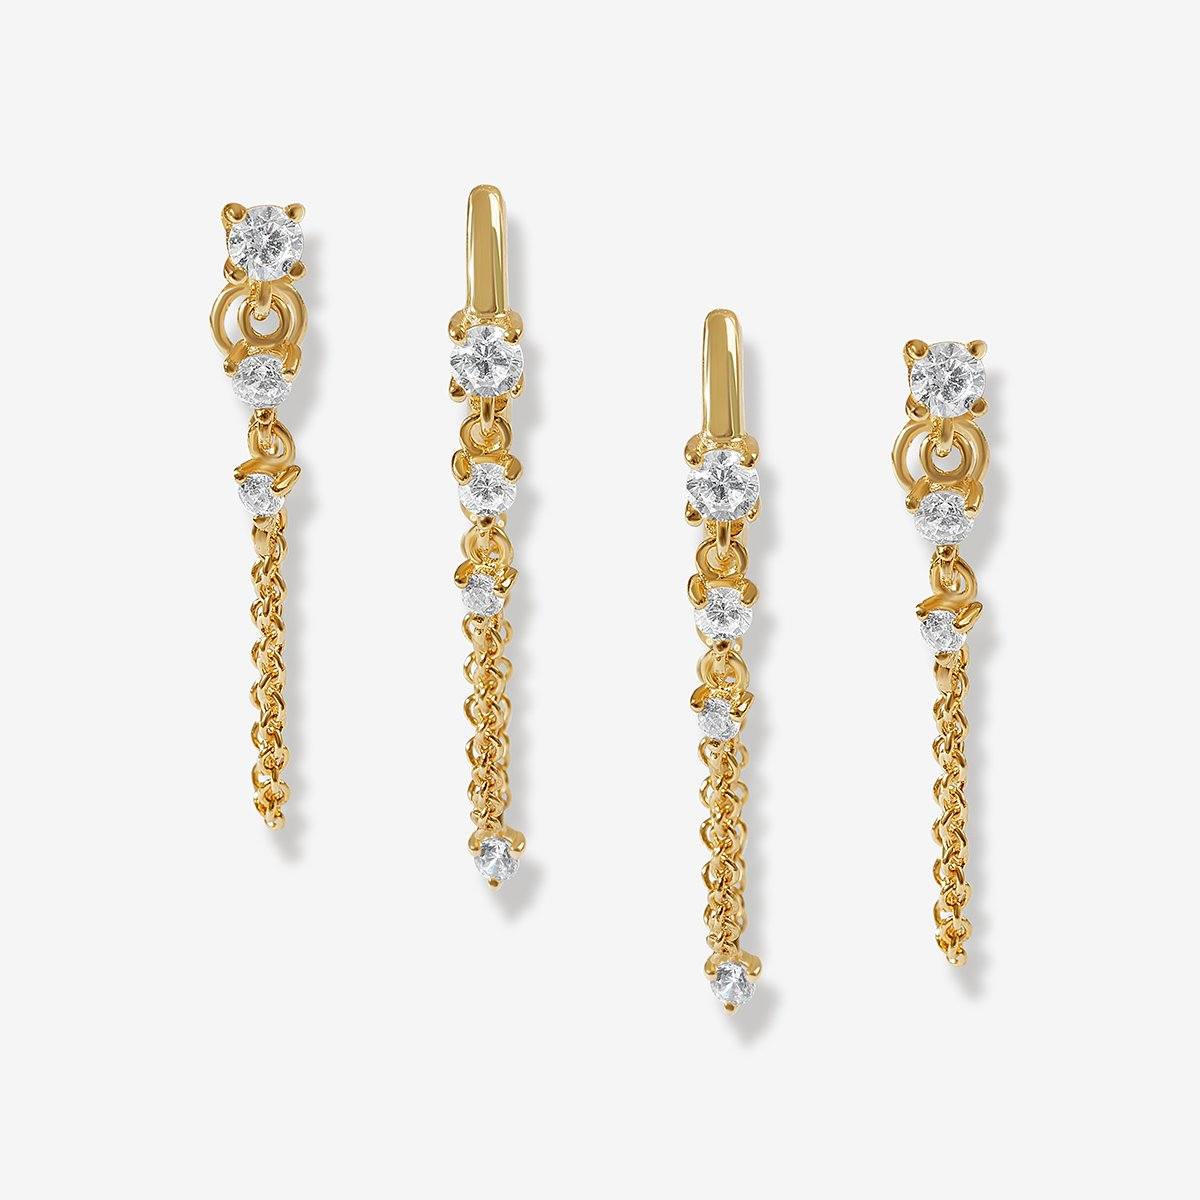 Hanging 22K Ladies Gold Earrings at Rs 19980/pair in Gurugram | ID:  21710196455